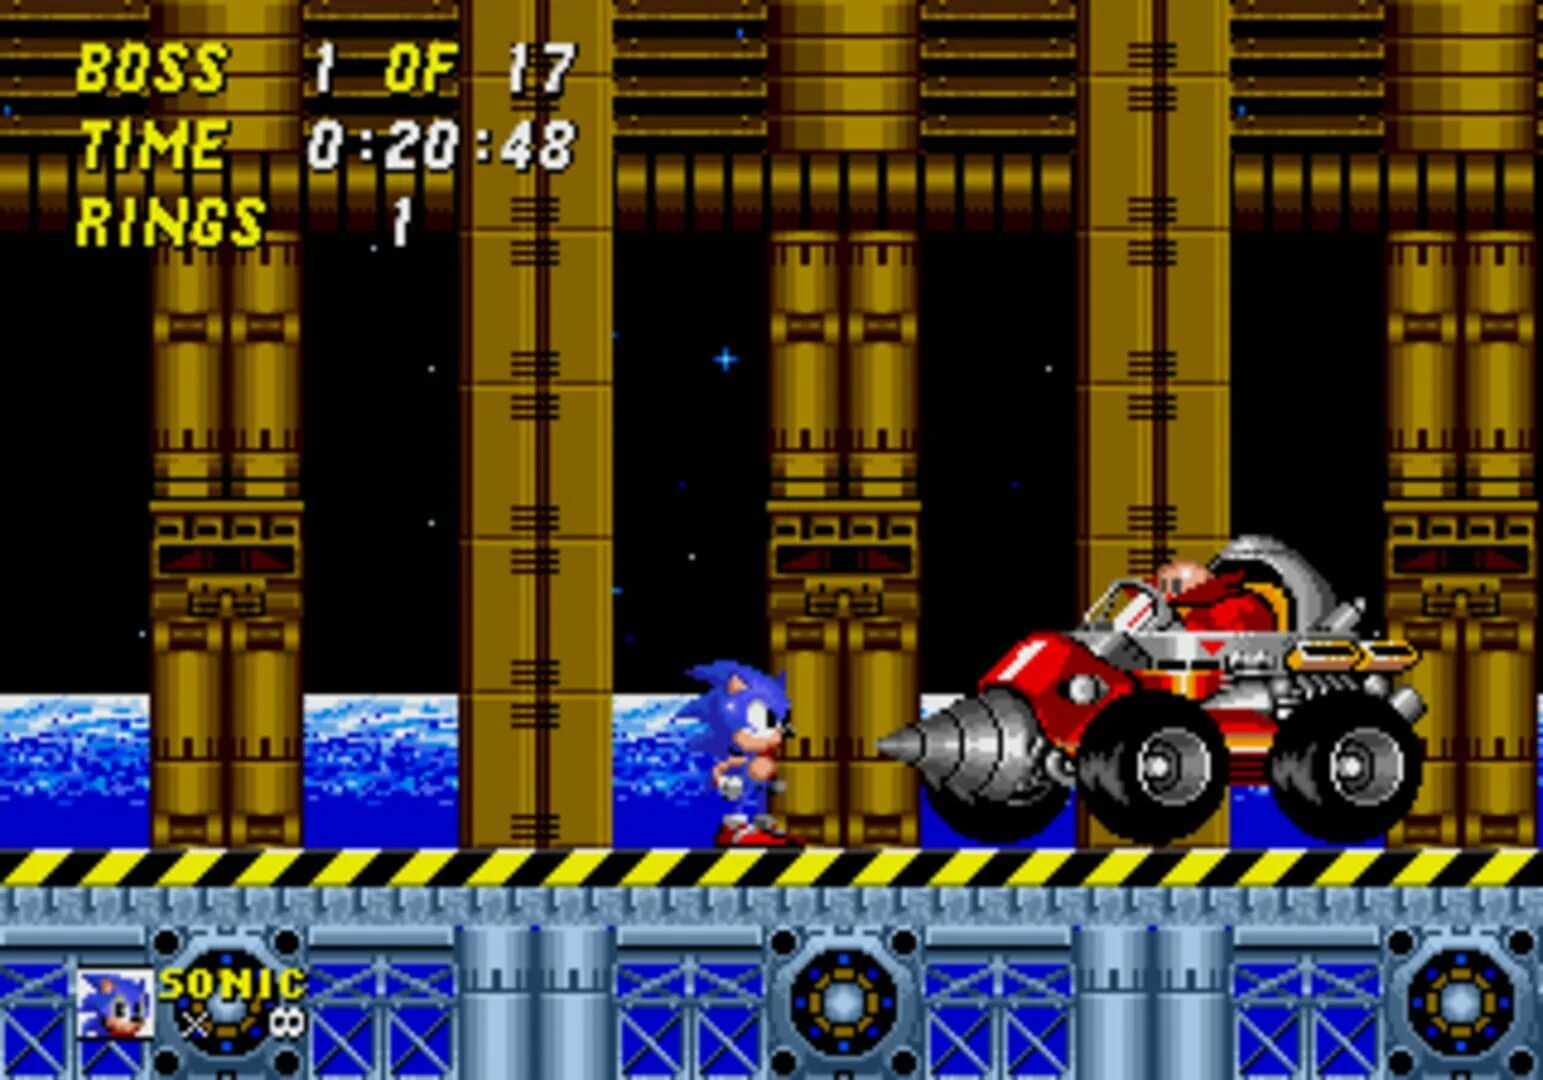 Sonic 2 Robotnik s Revenge. Игра Robotnik s Revenge super Sonic. Доктор Роботник из игры Sonic 2 Sega. Супер Соник месть работника.